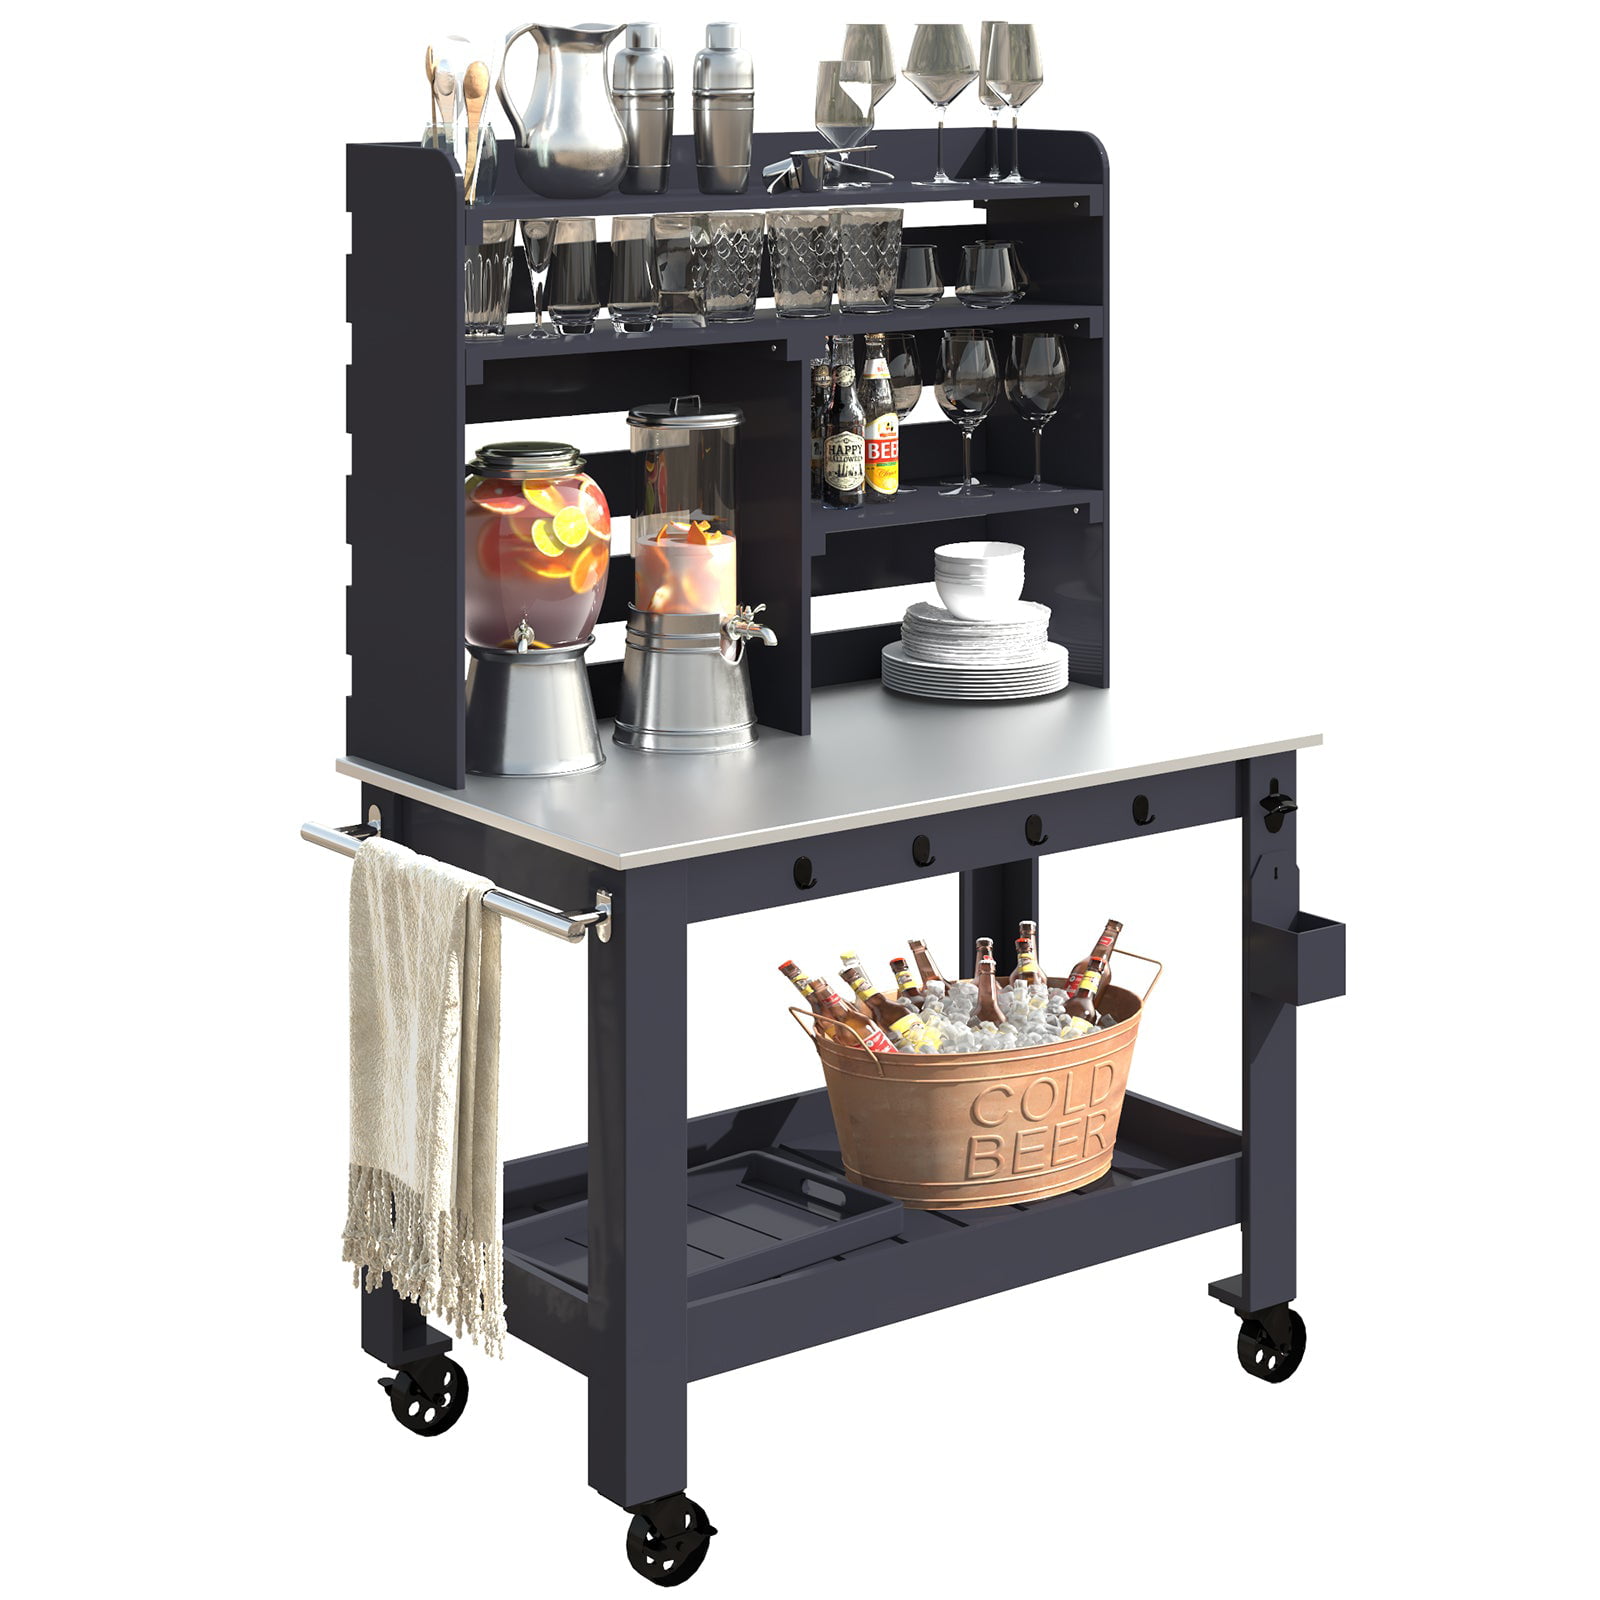 GDLF Gray Stainless Steel Outdoor Kitchen Serving & Storage Cart